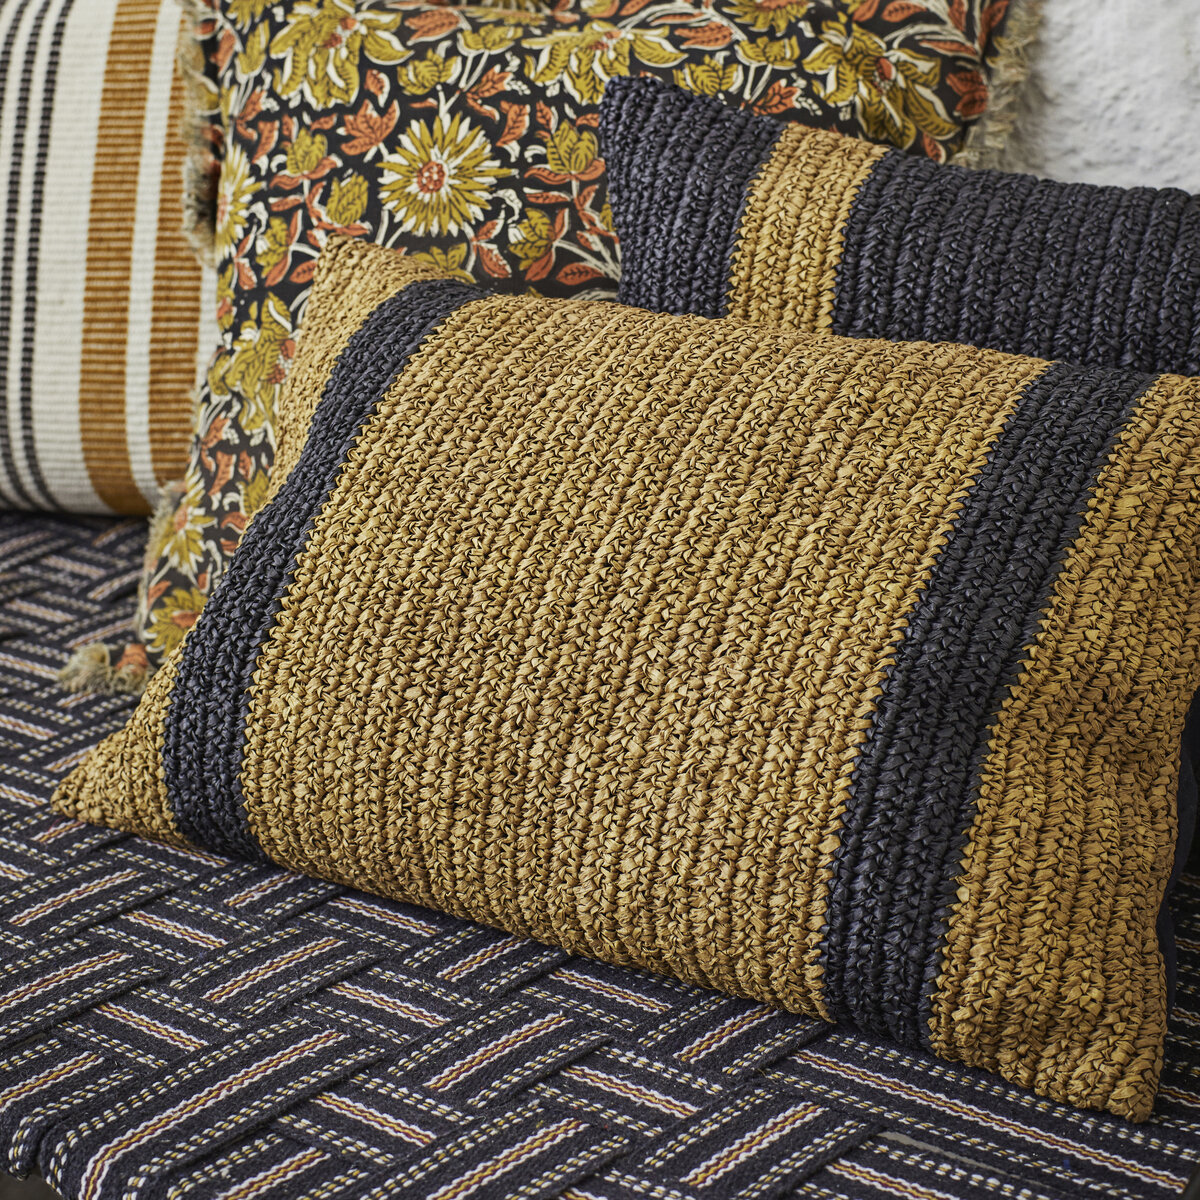 Cuscino in seta da 50 x 30 cm - Articoli tessili decorativi - Tikamoon